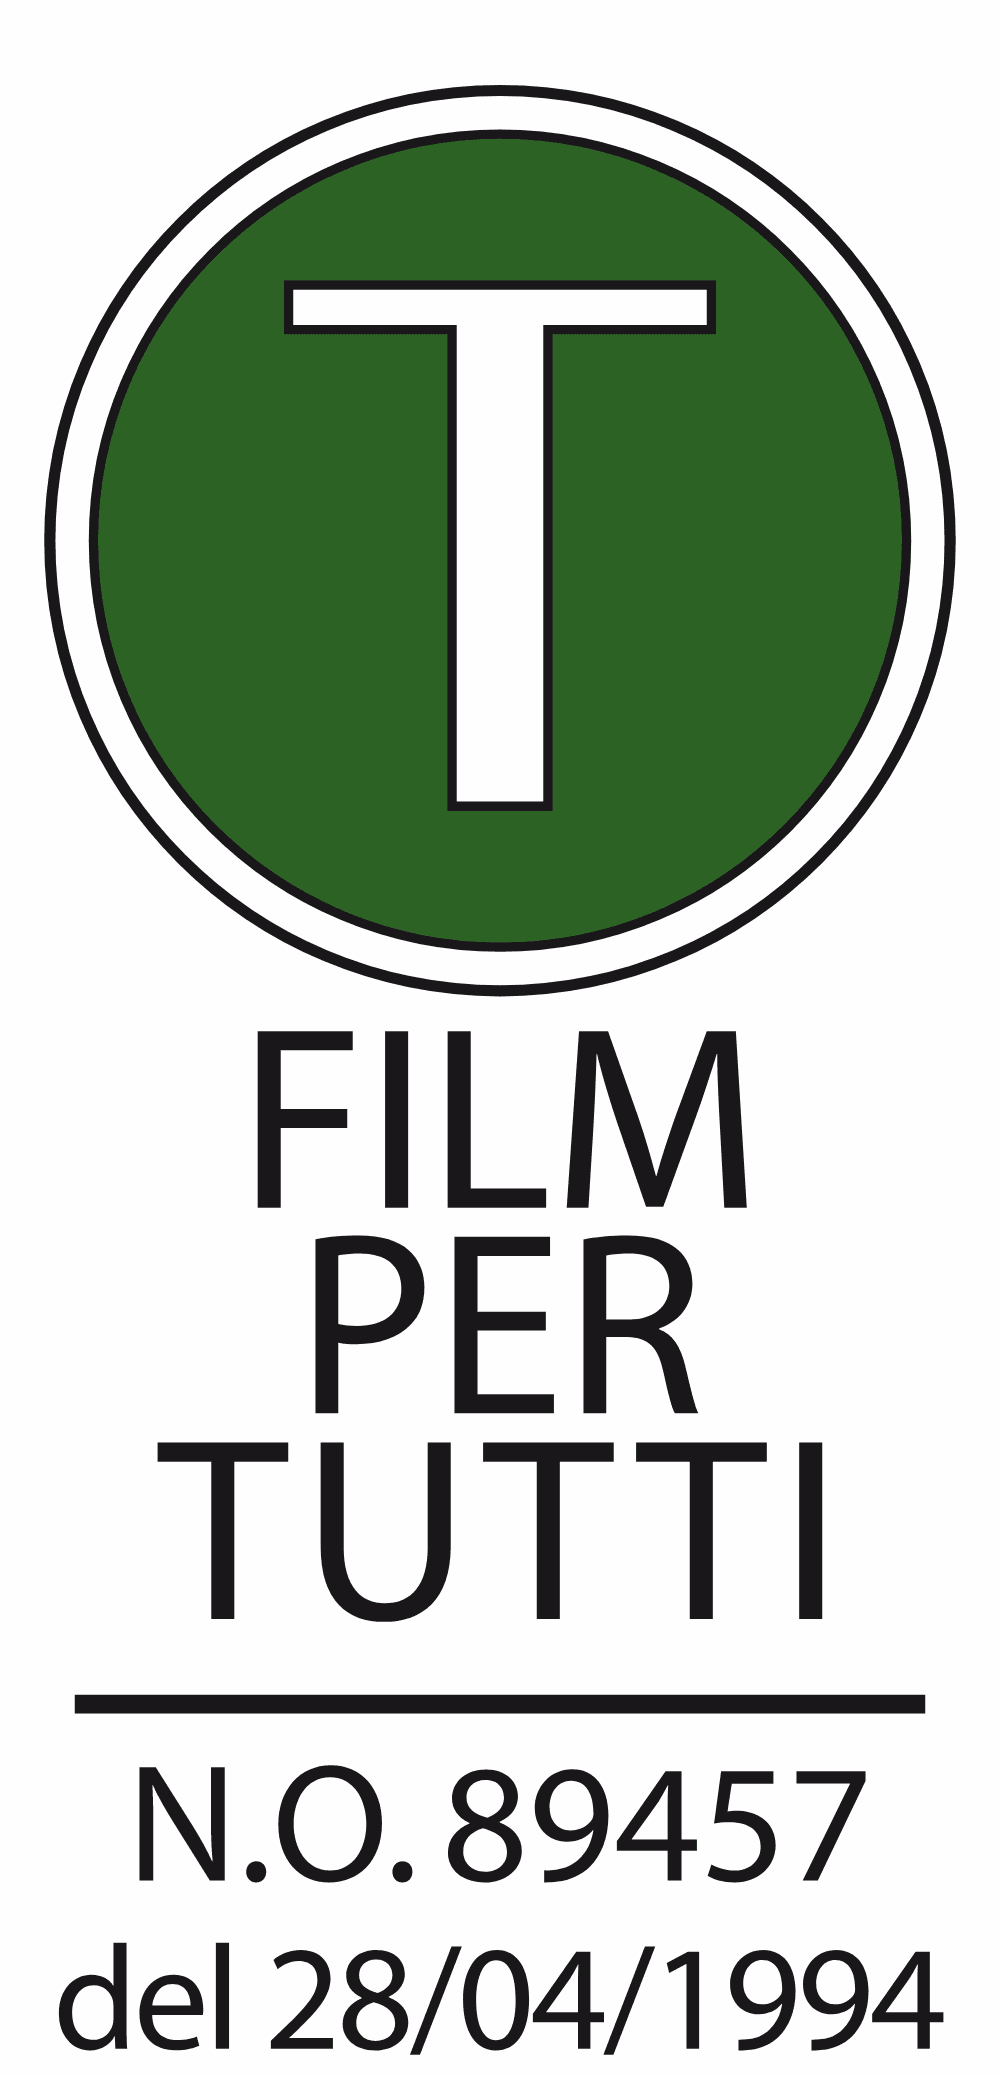 Film Per Tutti Logo download